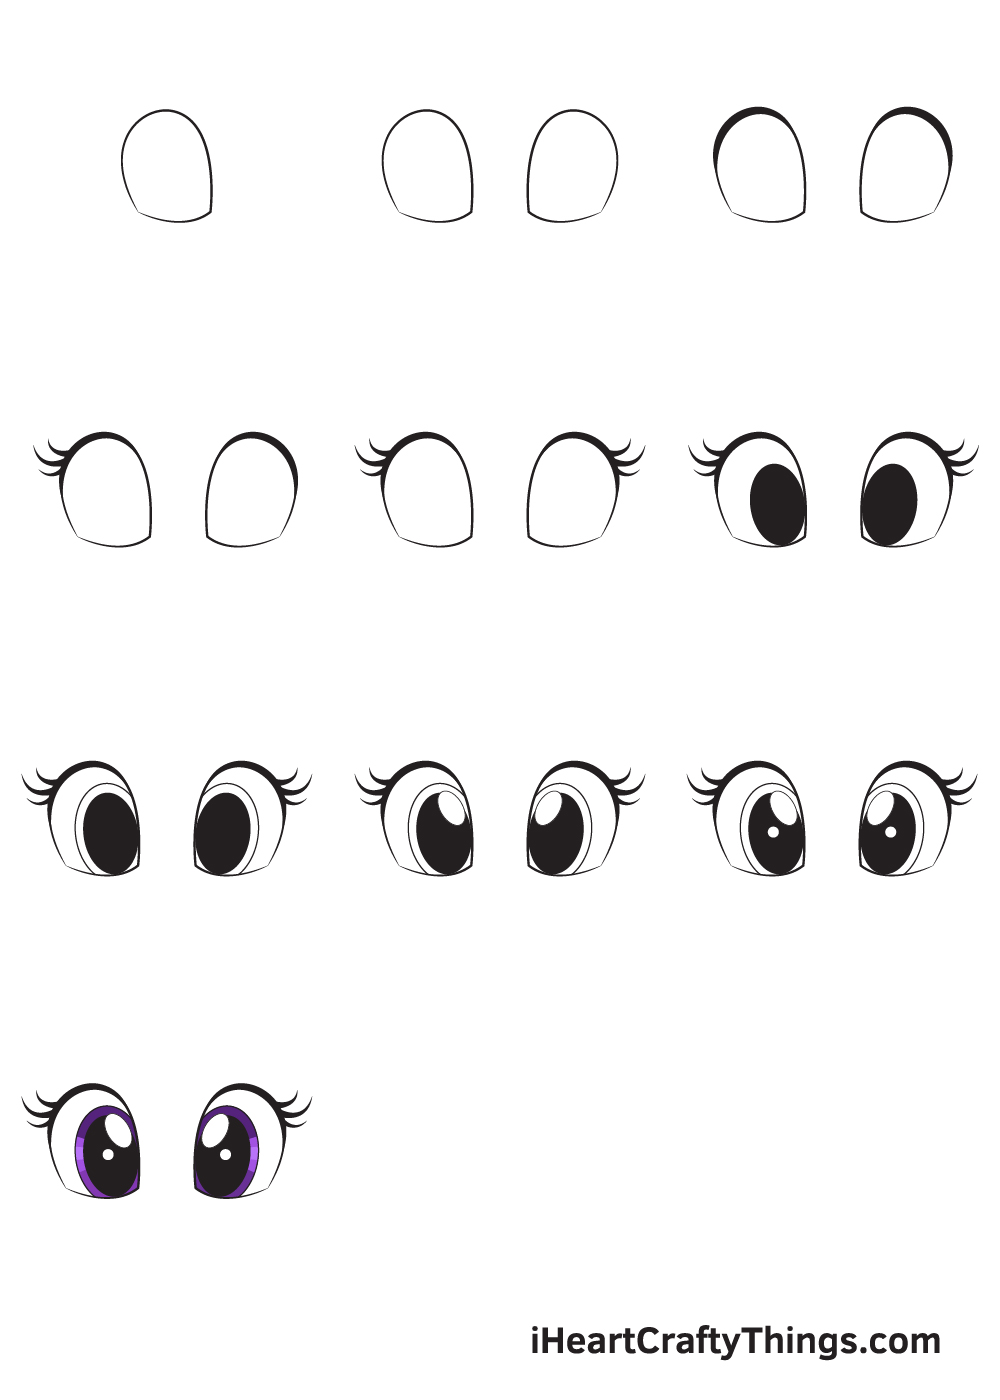 Drawing Cute Eyes in 10 Easy Steps 1 - Hướng dẫn chi tiết cách vẽ mắt đẹp dễ thương có hồn đơn giản với 9 bước cơ bản